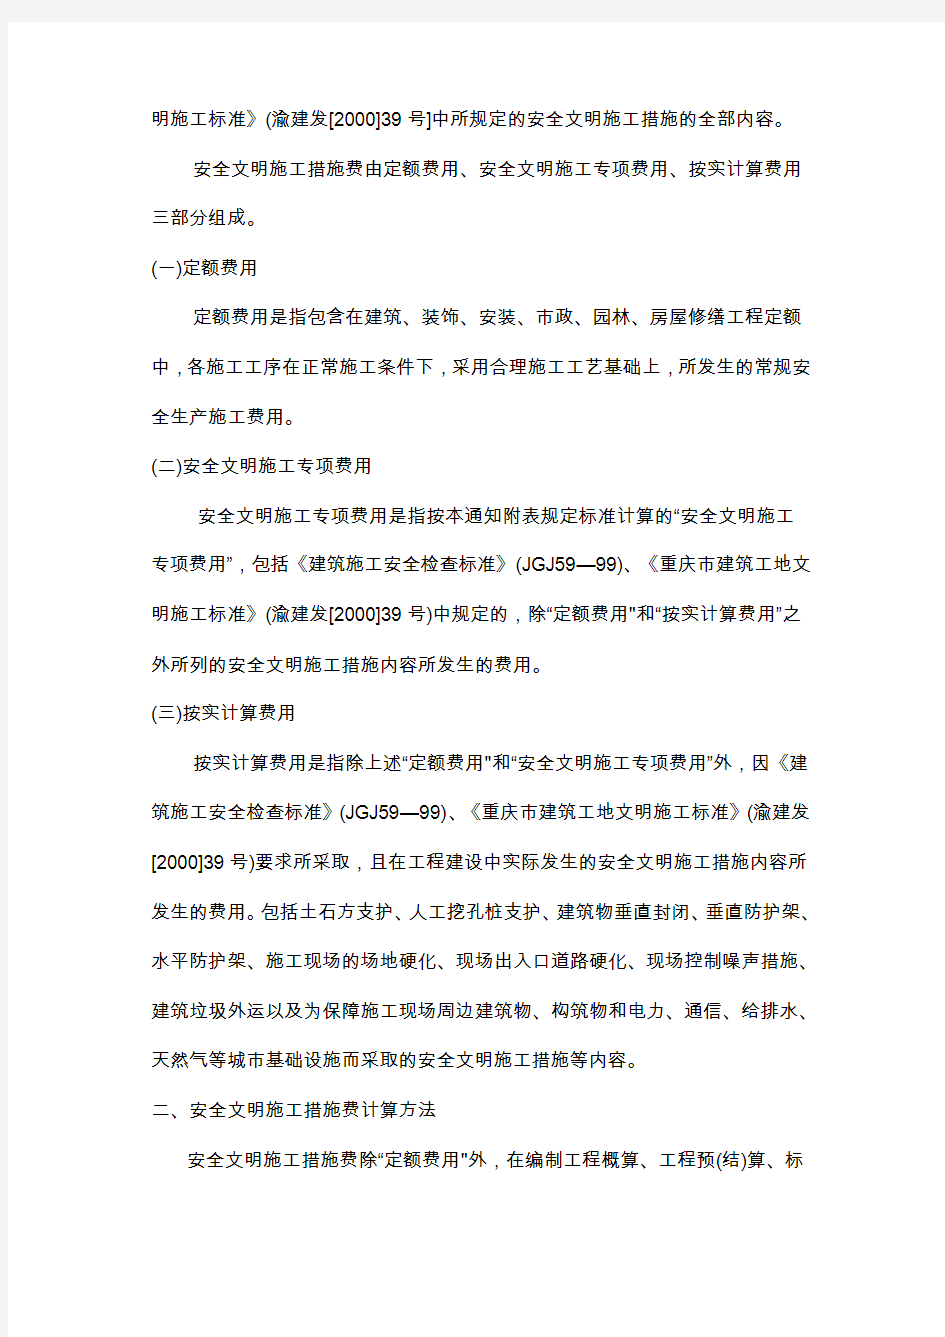 重庆市建设委员会文件(2004安全文明施工费)